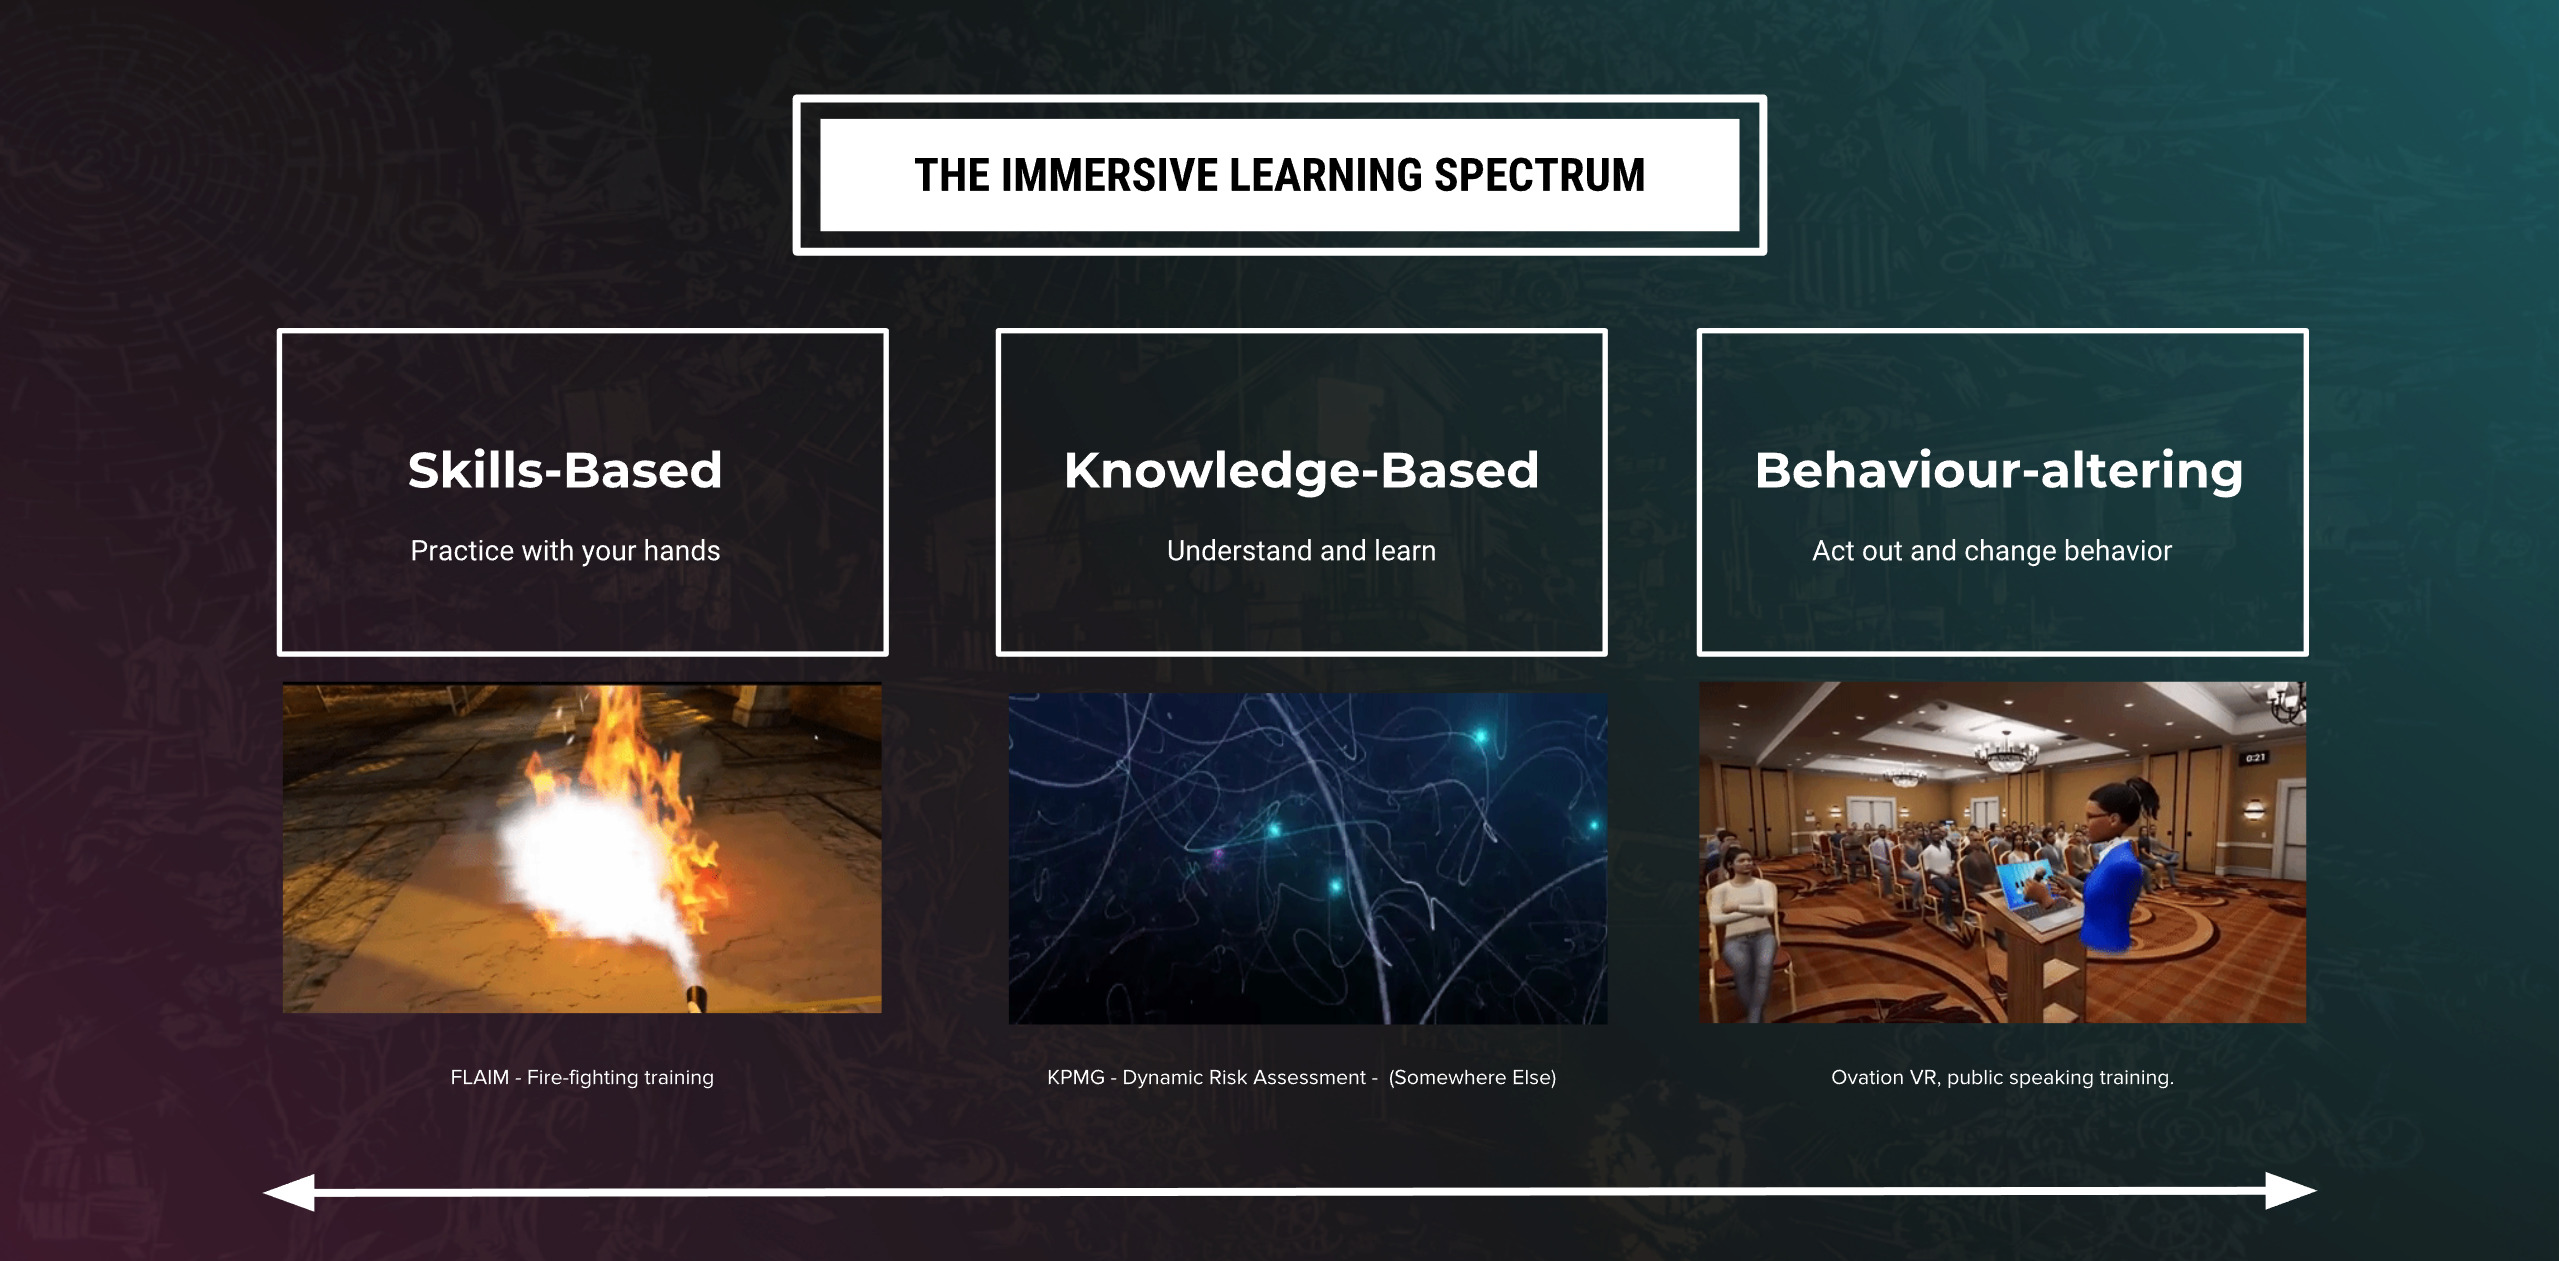 Immersive learning spectrum